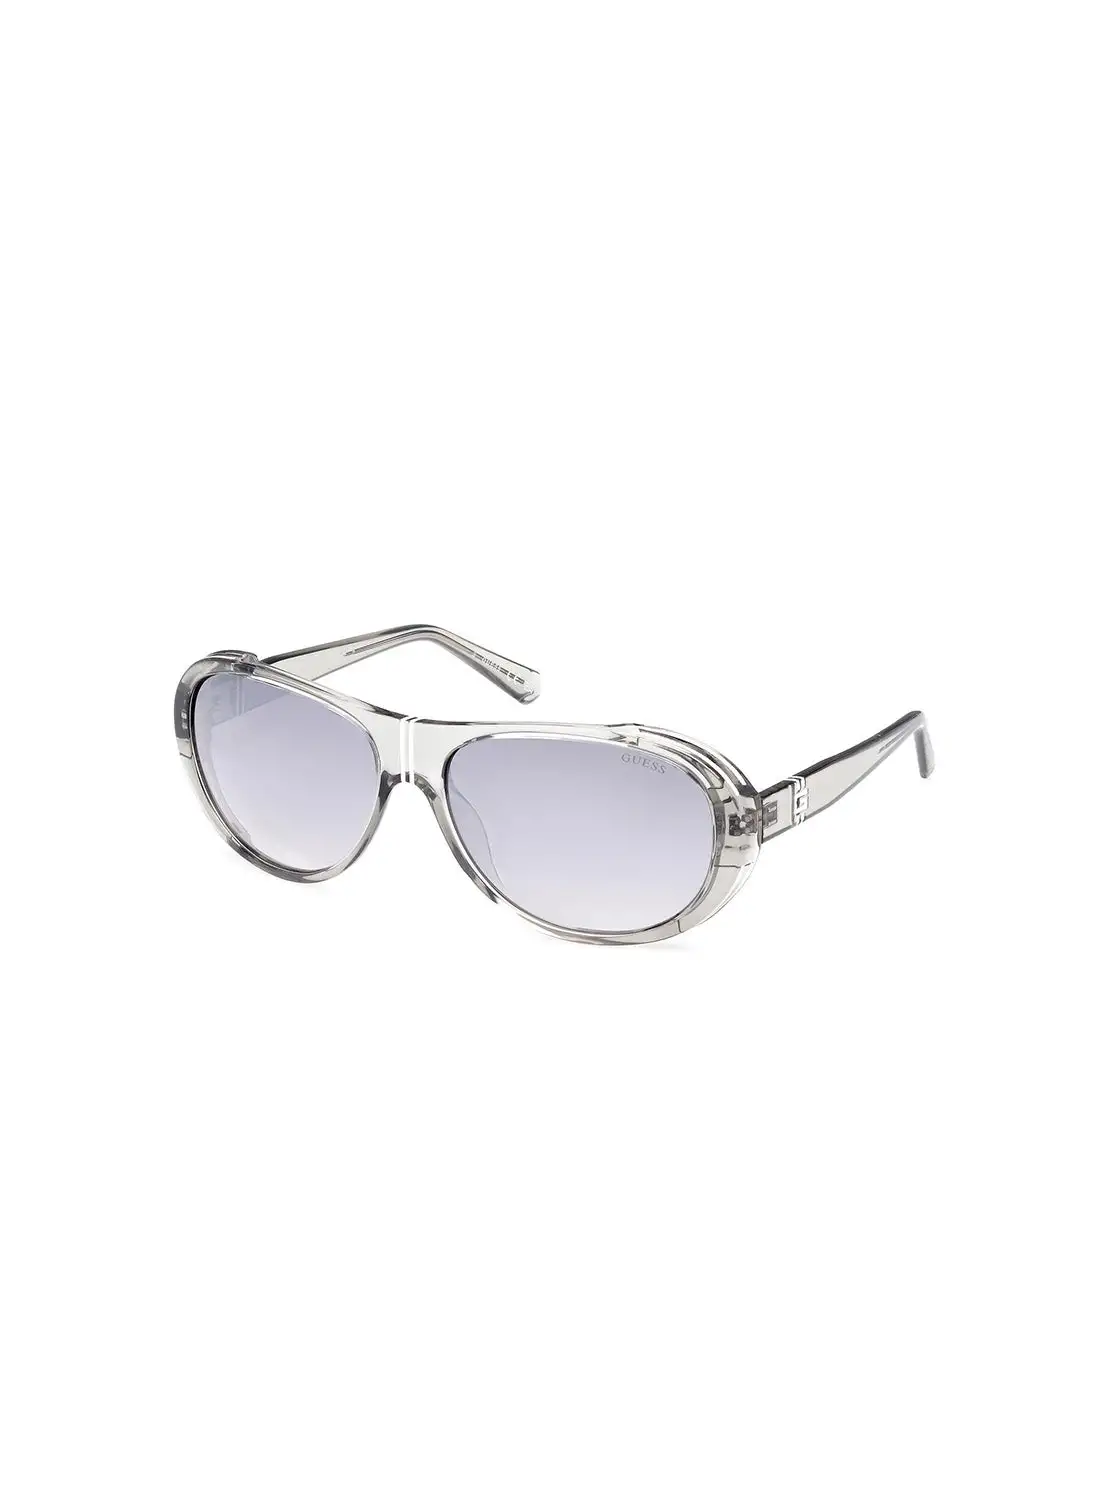 GUESS Men's UV Protection Pilot Sunglasses - GU0008120C62 - Lens Size: 62 Mm